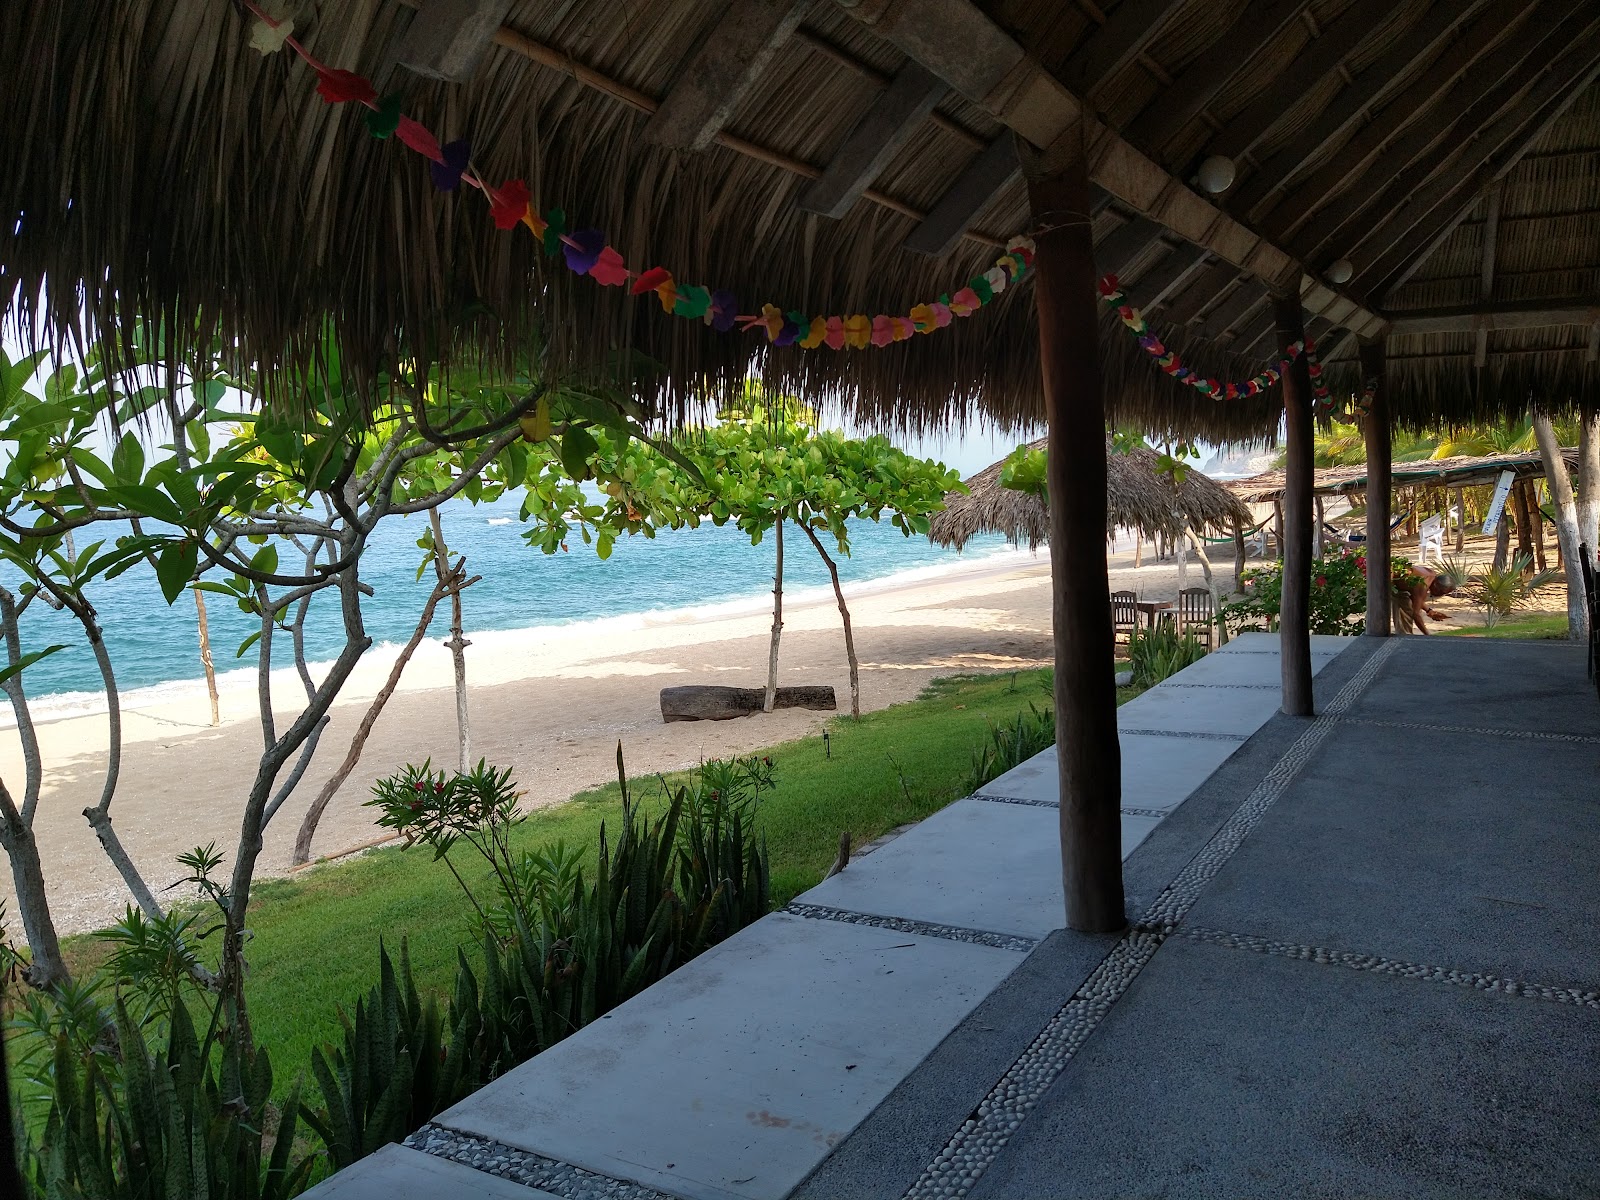 Foto de Playa La Palma Sola - lugar popular entre los conocedores del relax